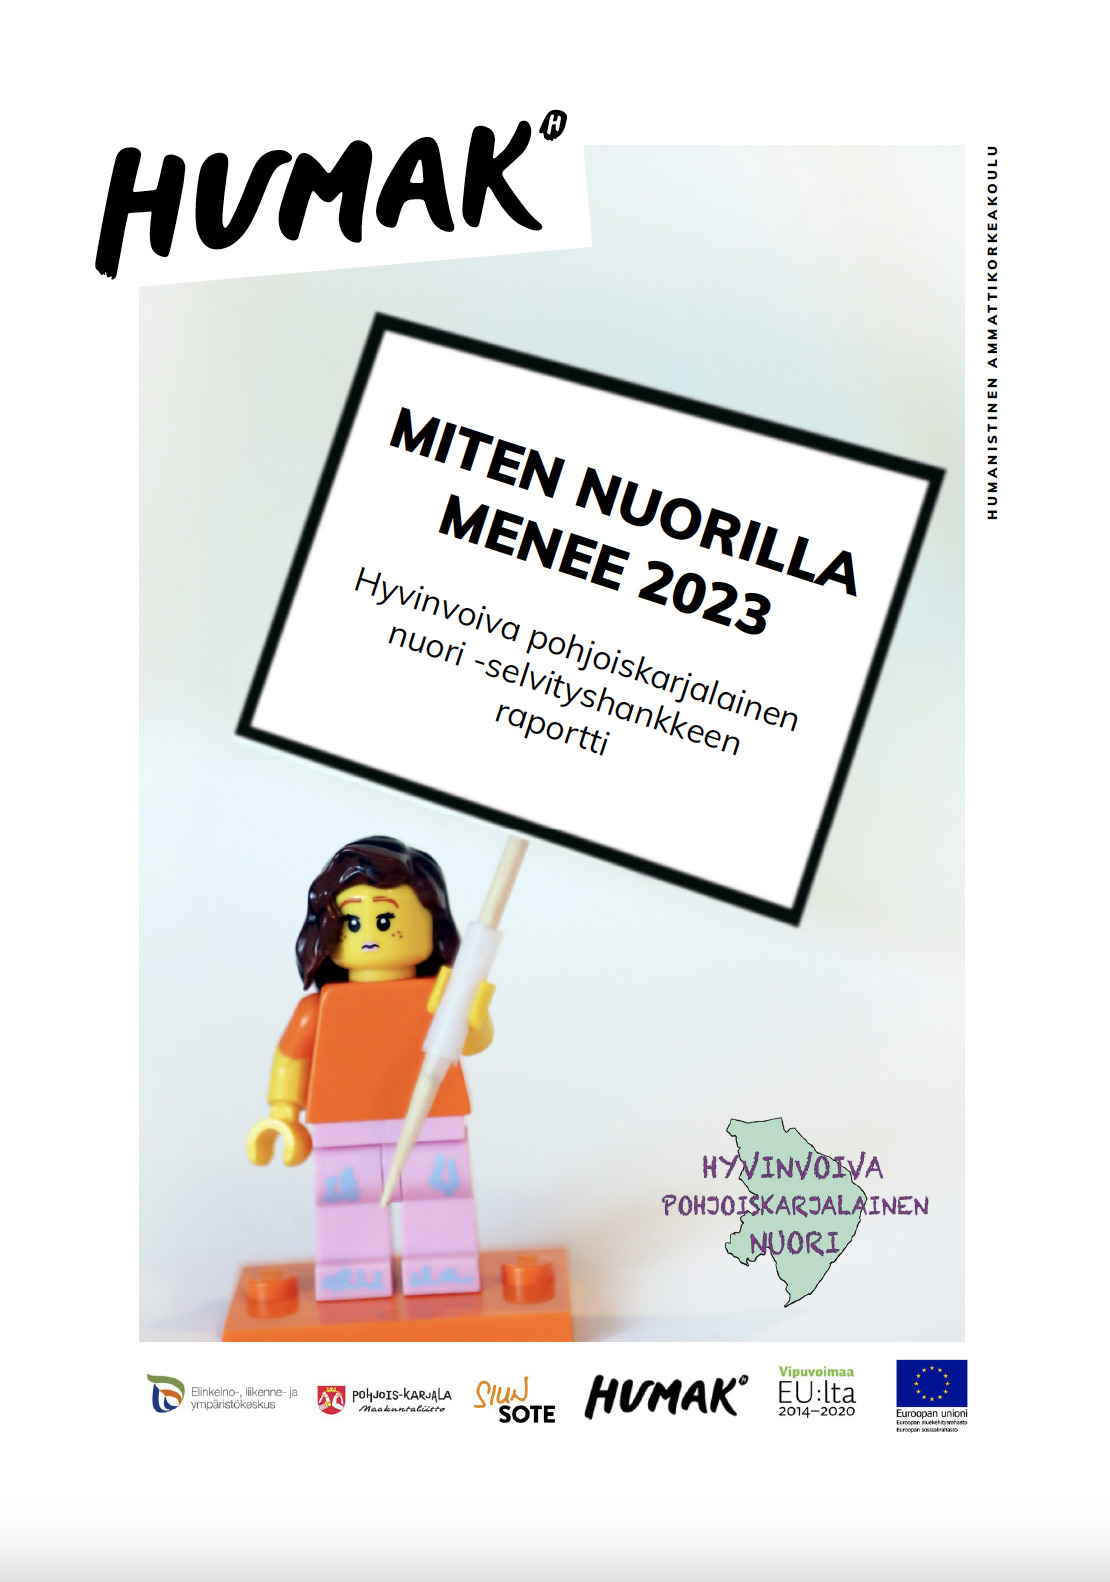 Miten nuorilla menee 2023 - Hyvinvoiva pohjoiskarjalainen nuori -selvityshankkeen raportin kansikuva.